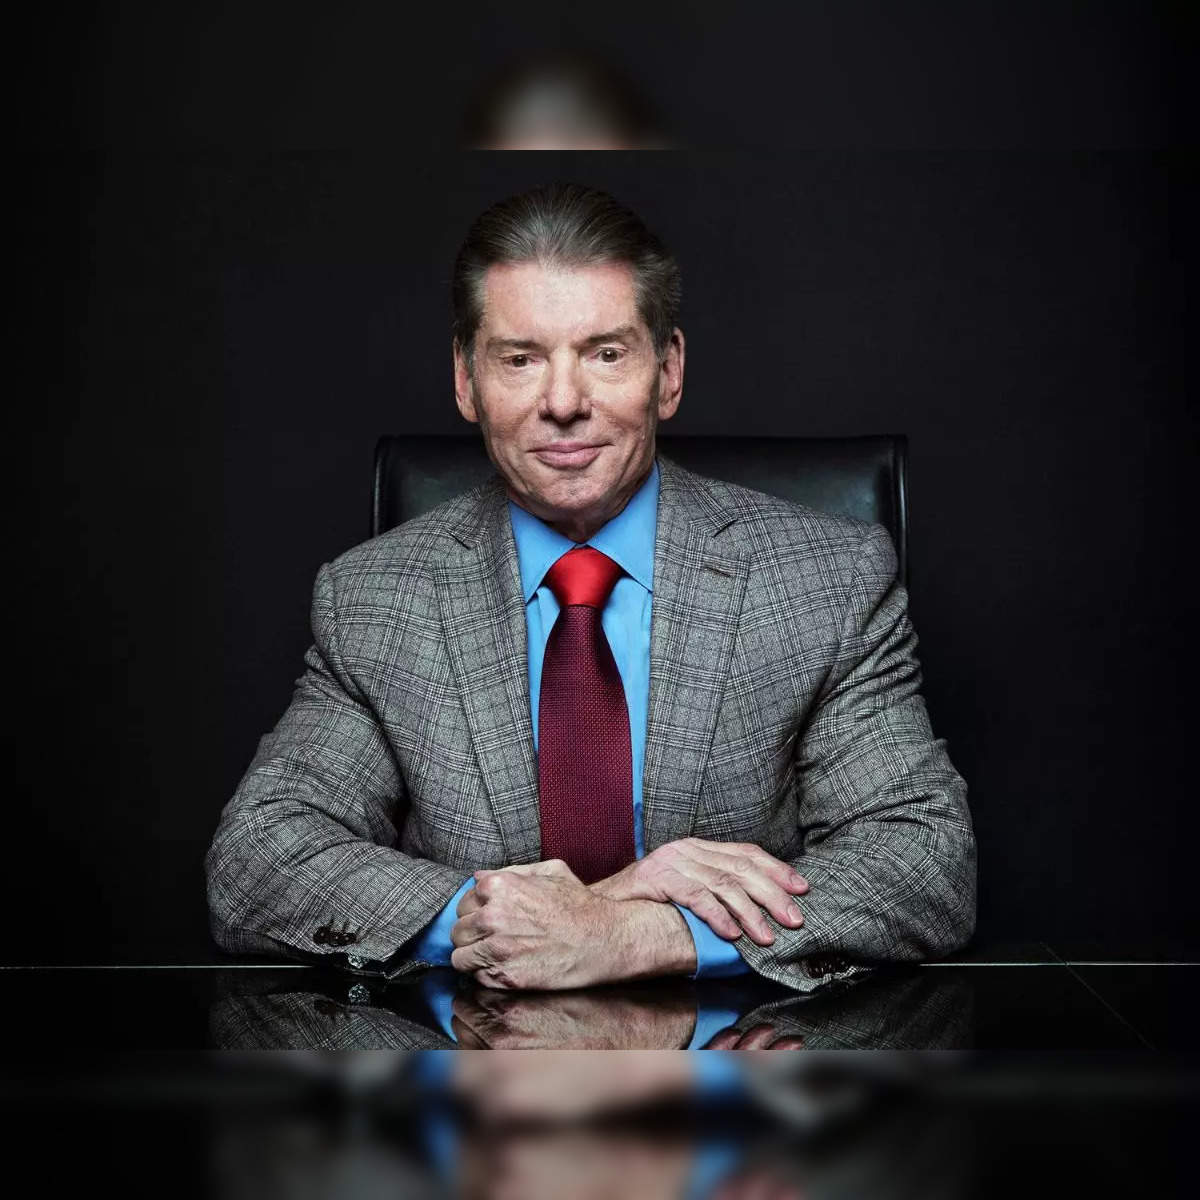 Vince McMahon lawsuit: Paul 'Triple H' Levesque makes public